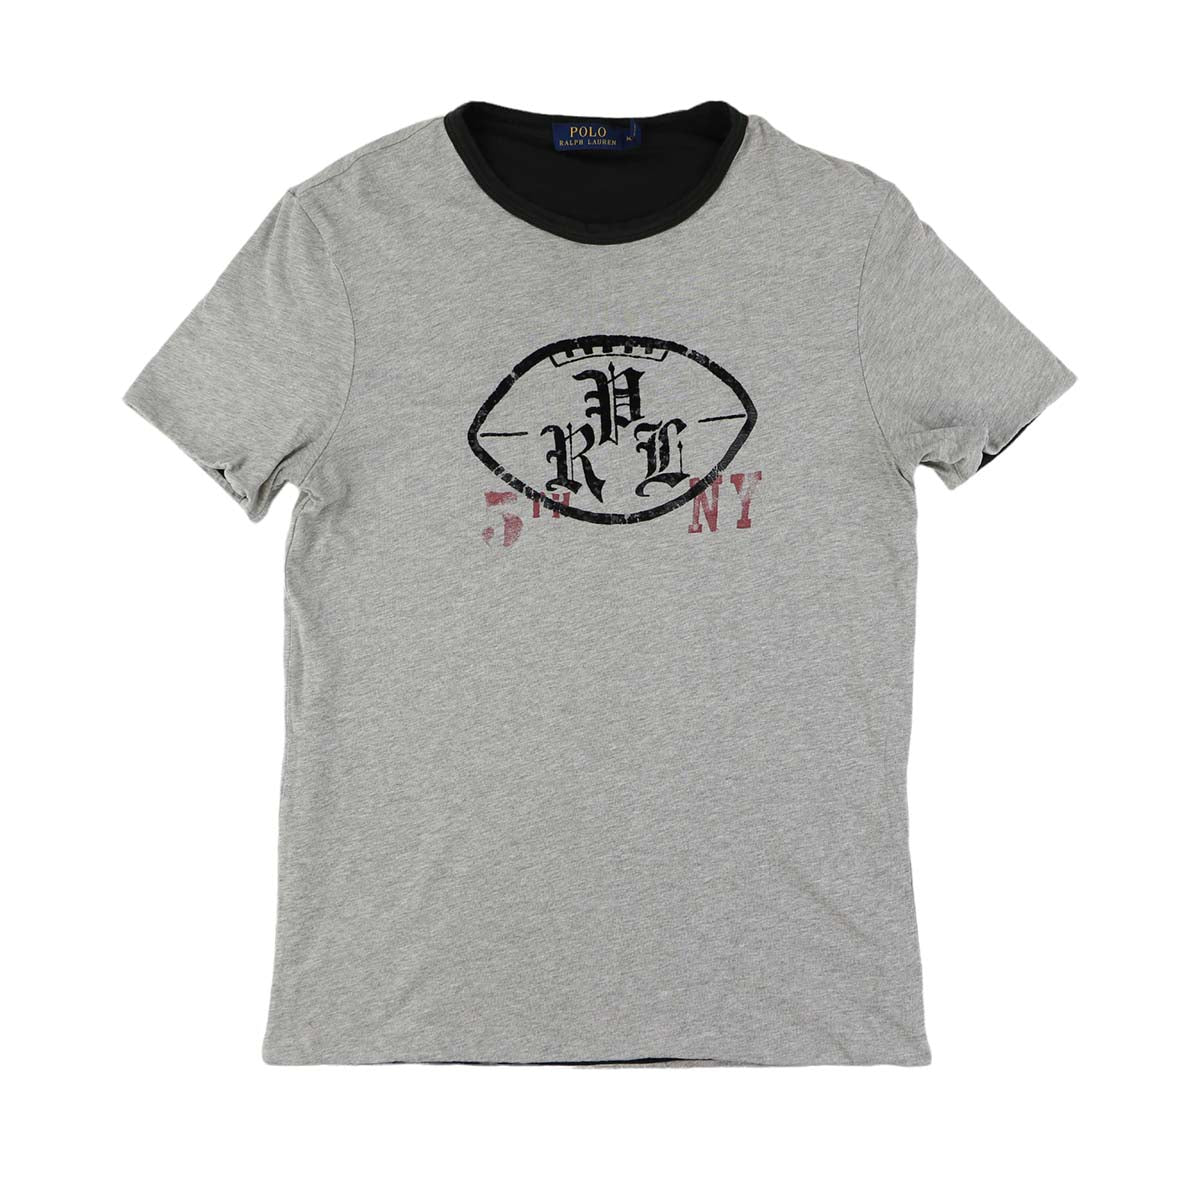 Ralph Lauren T-shirt (M)